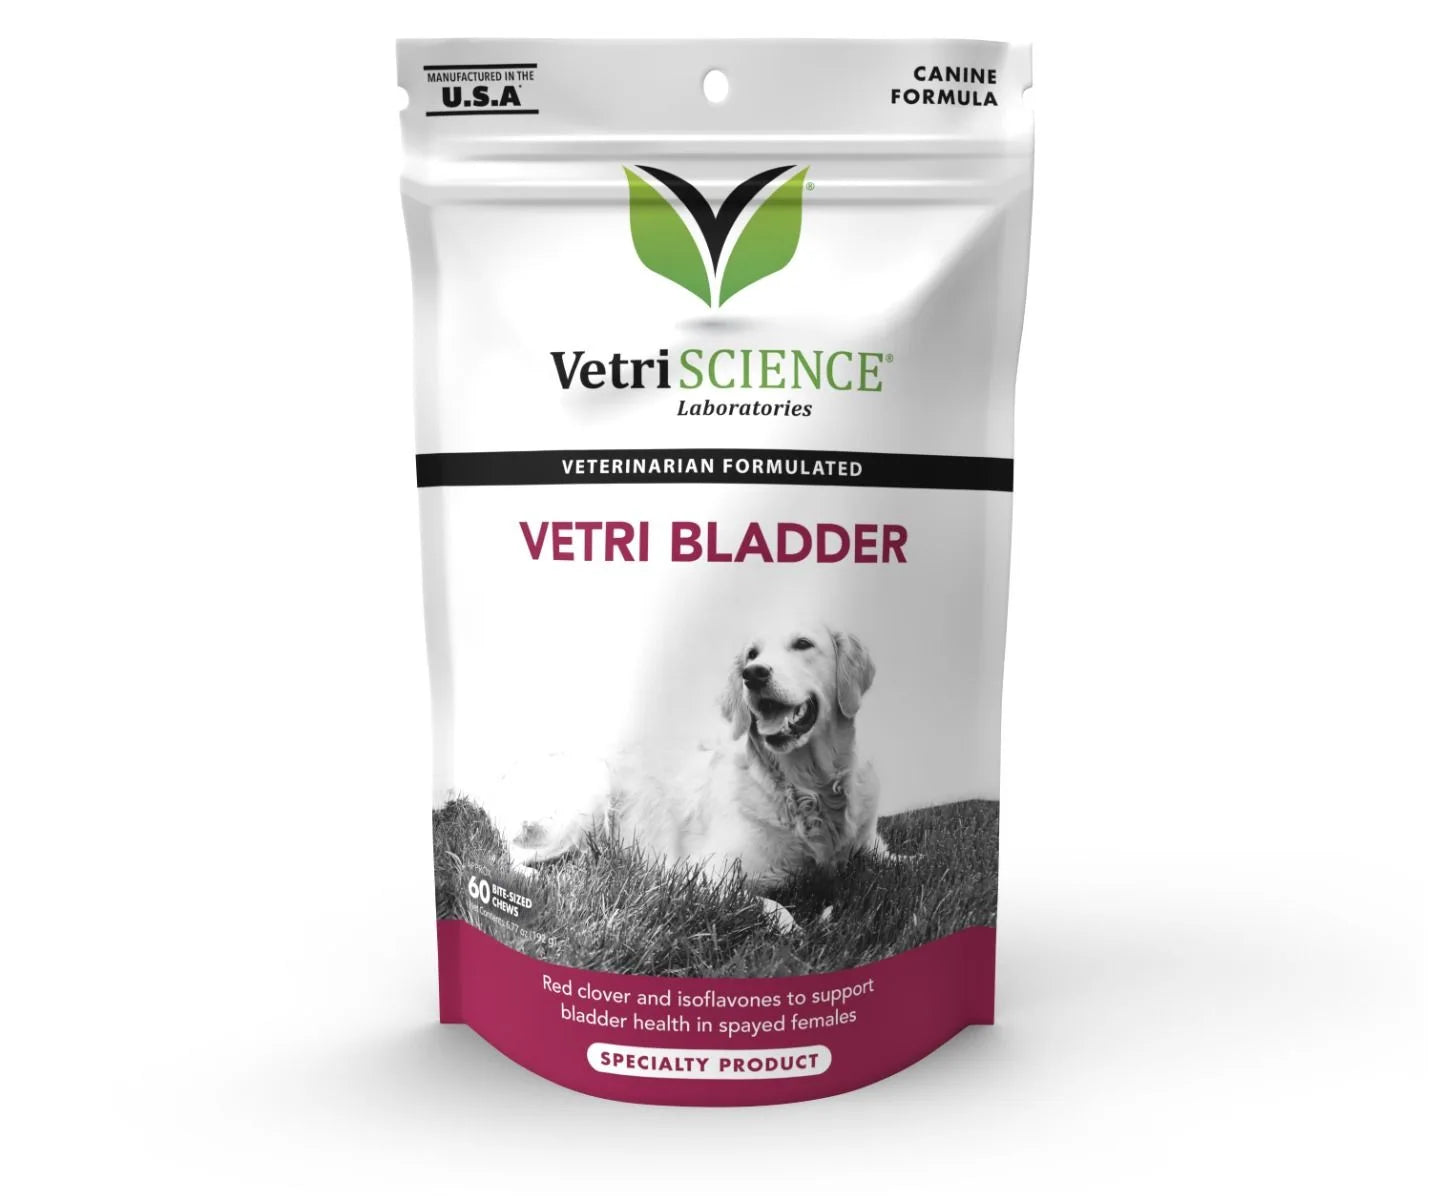 Vetriscience - Vetri Bladder Supplement for Dogs (60 chews)